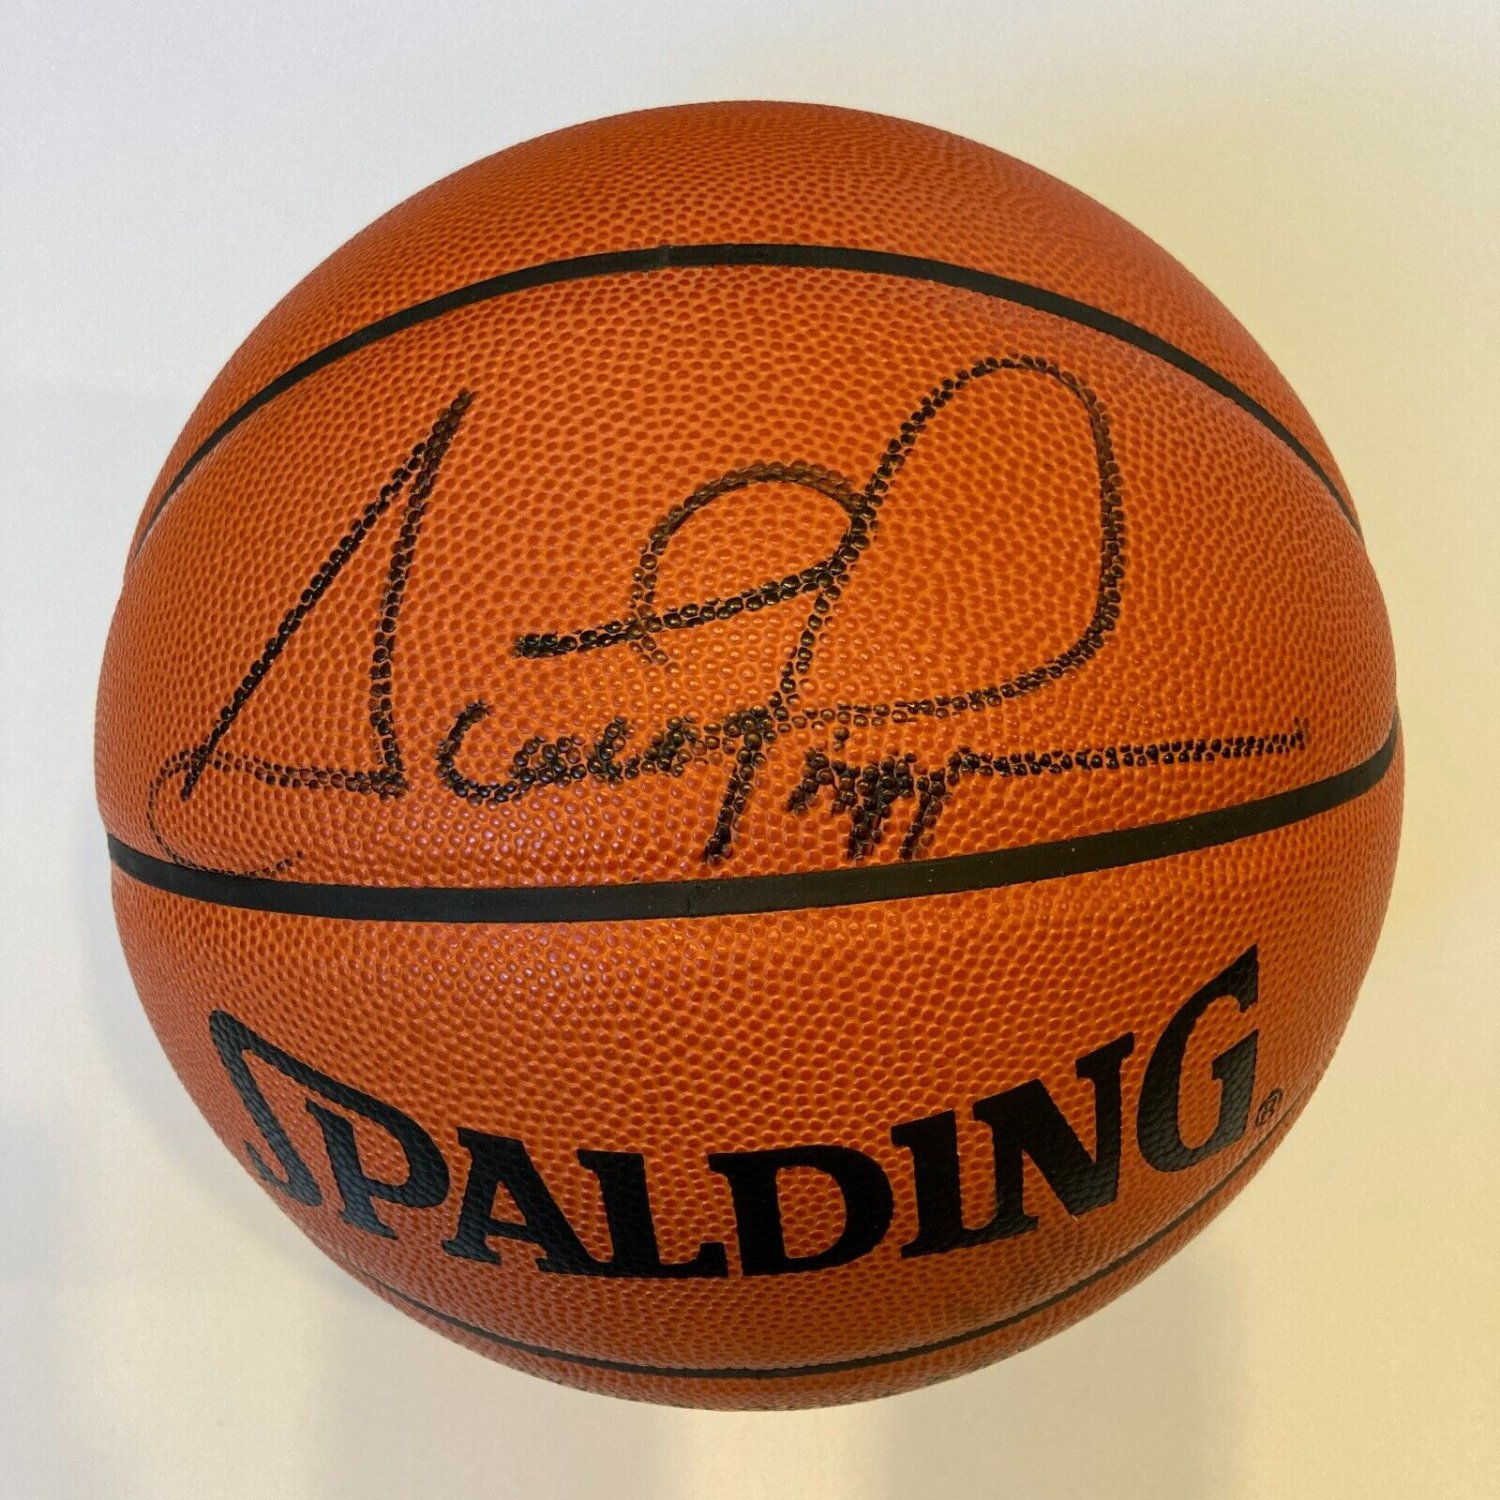 Scottie Pippen NBA Original Autographed Jerseys for sale